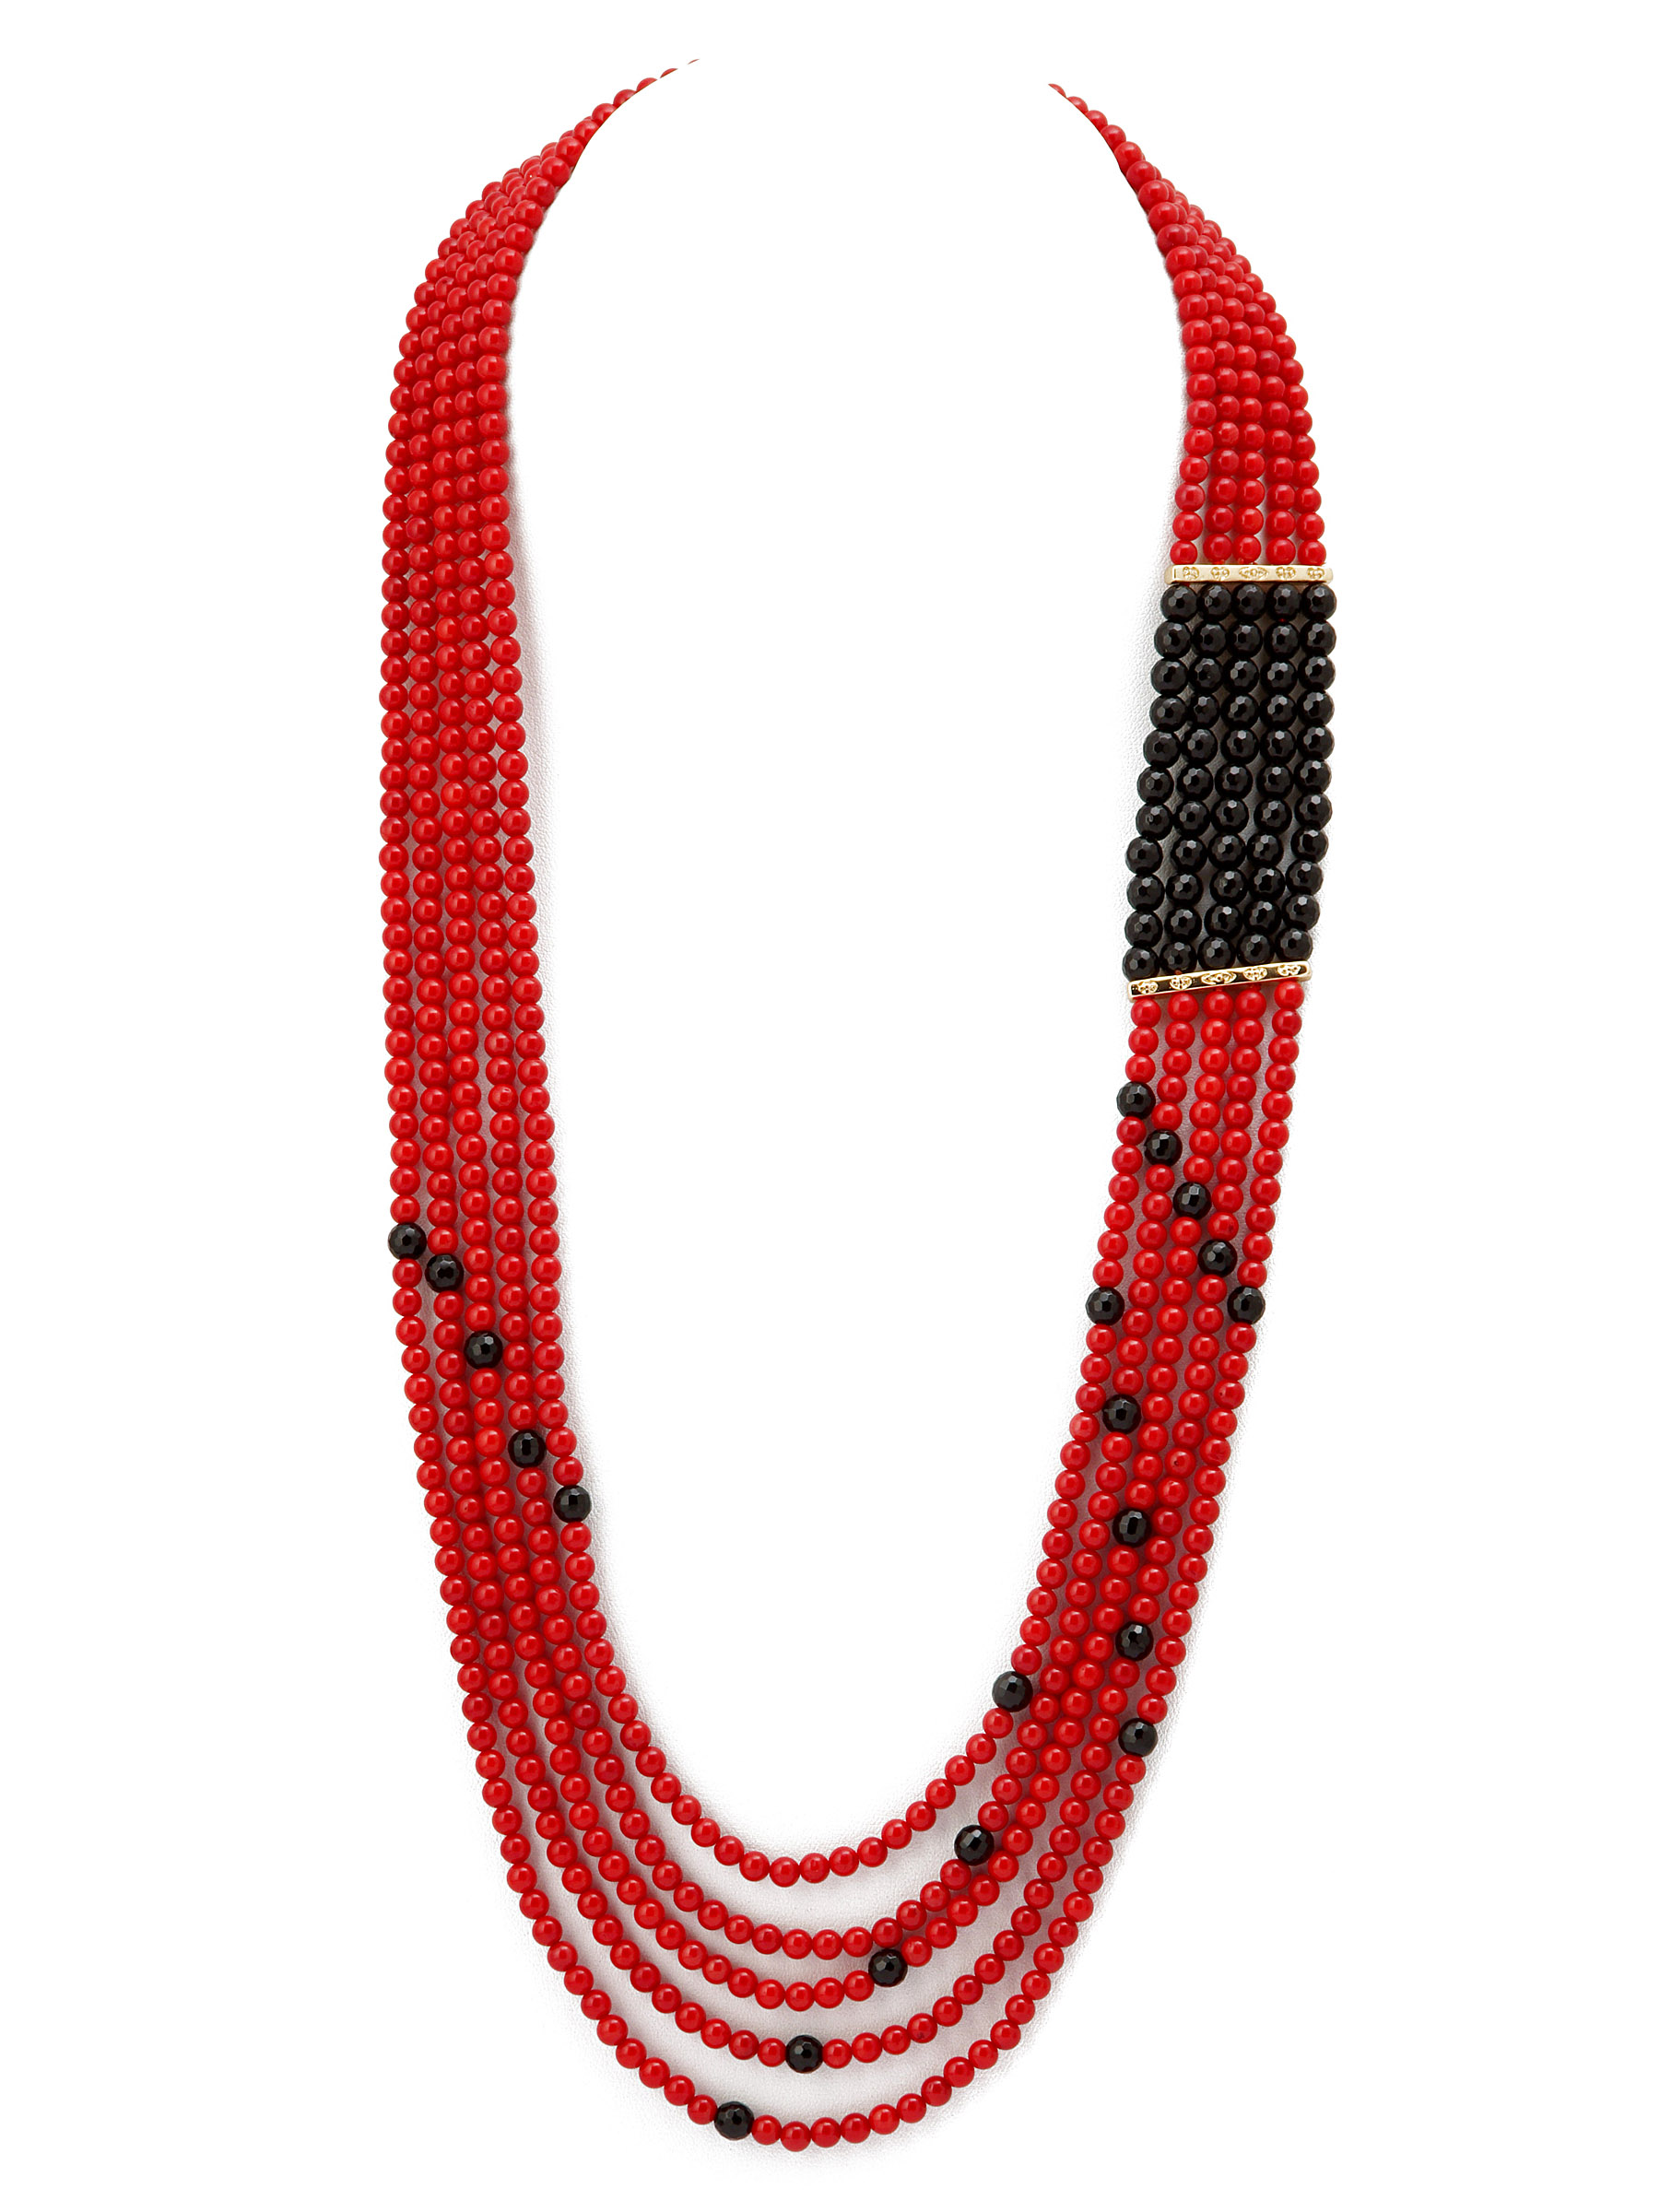 фото Колье/ожерелье бижутерное ЖемАрт с541-054, Агат, Коралл, 72 см, красный, черный, золотой